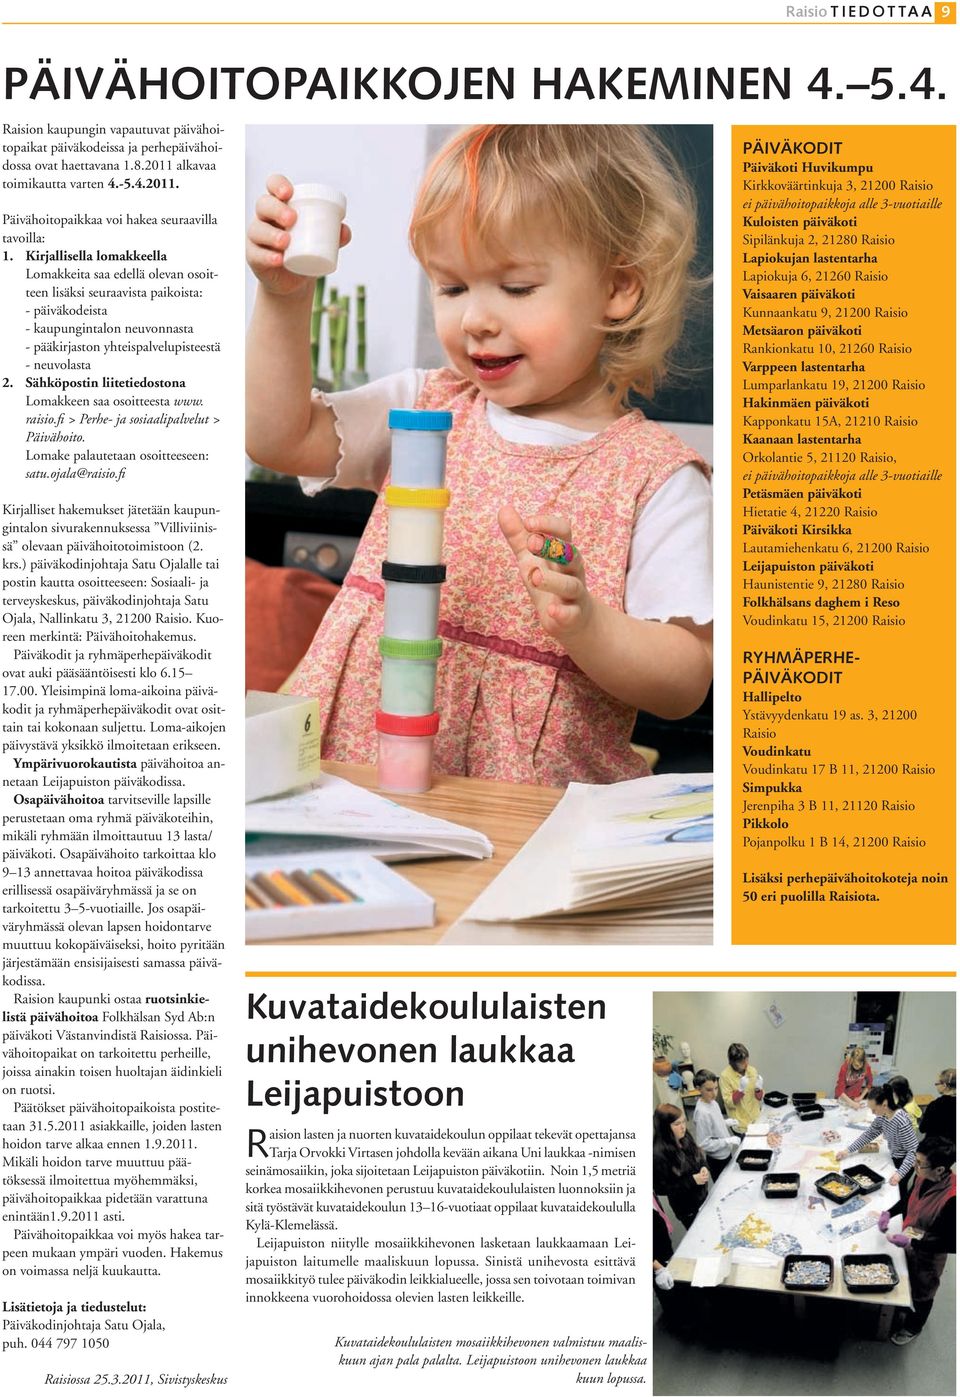 Sähköpostin liitetiedostona Lomakkeen saa osoitteesta www. raisio.fi > Perhe- ja sosiaalipalvelut > Päivähoito. Lomake palautetaan osoitteeseen: satu.ojala@raisio.